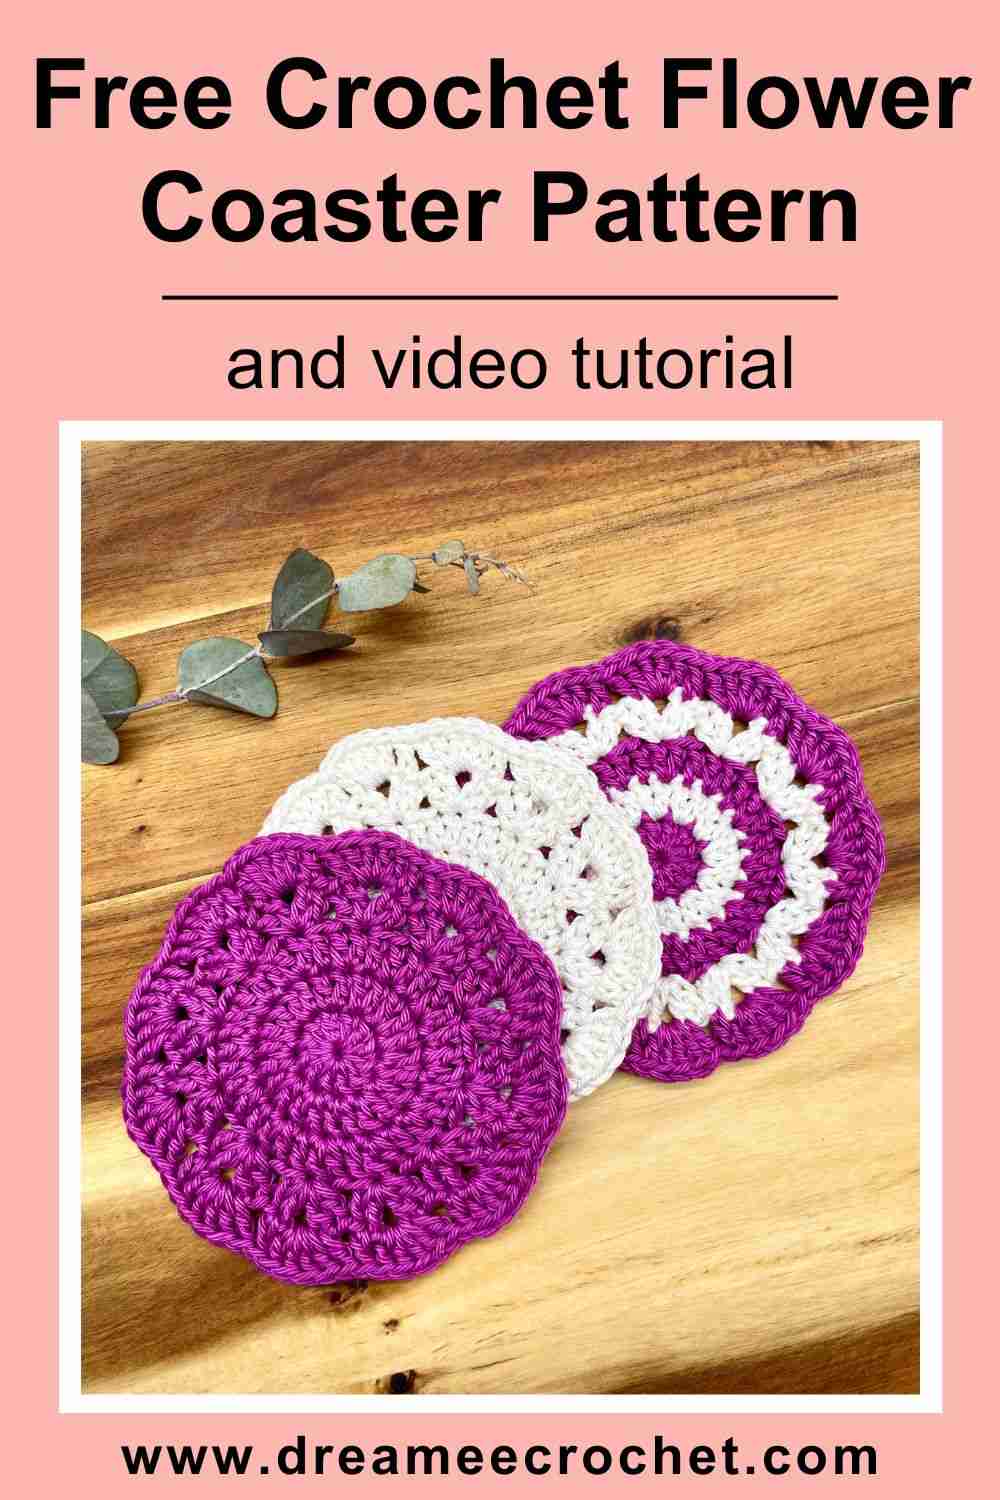 Free Crochet Flower Coaster Pattern & Video Tutorial (2)